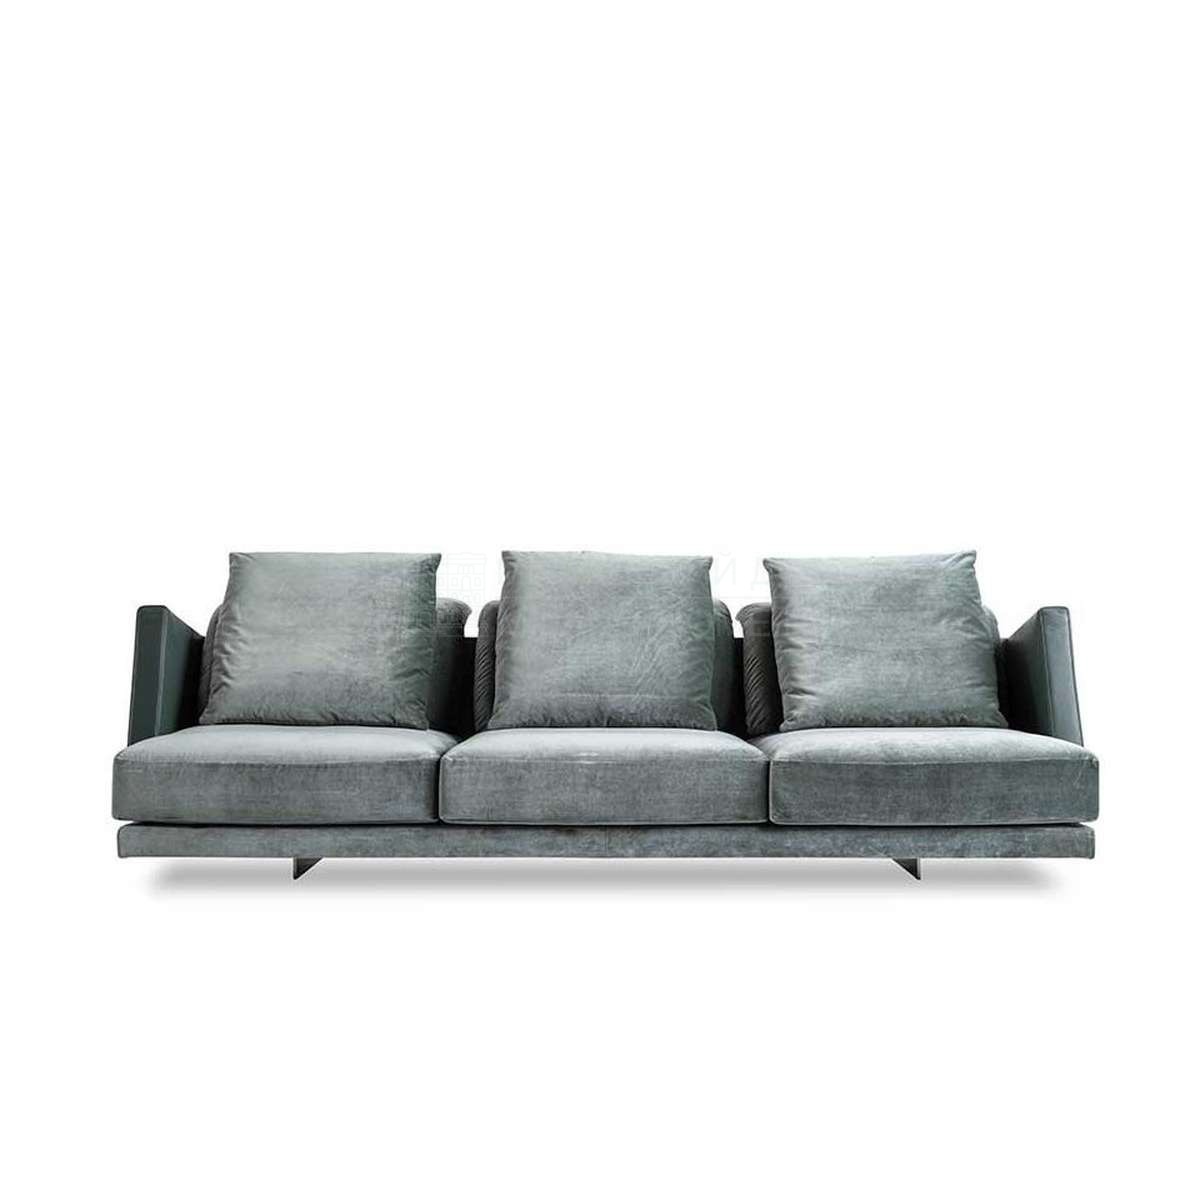 Прямой диван Volo sofa  из Италии фабрики FENDI Casa